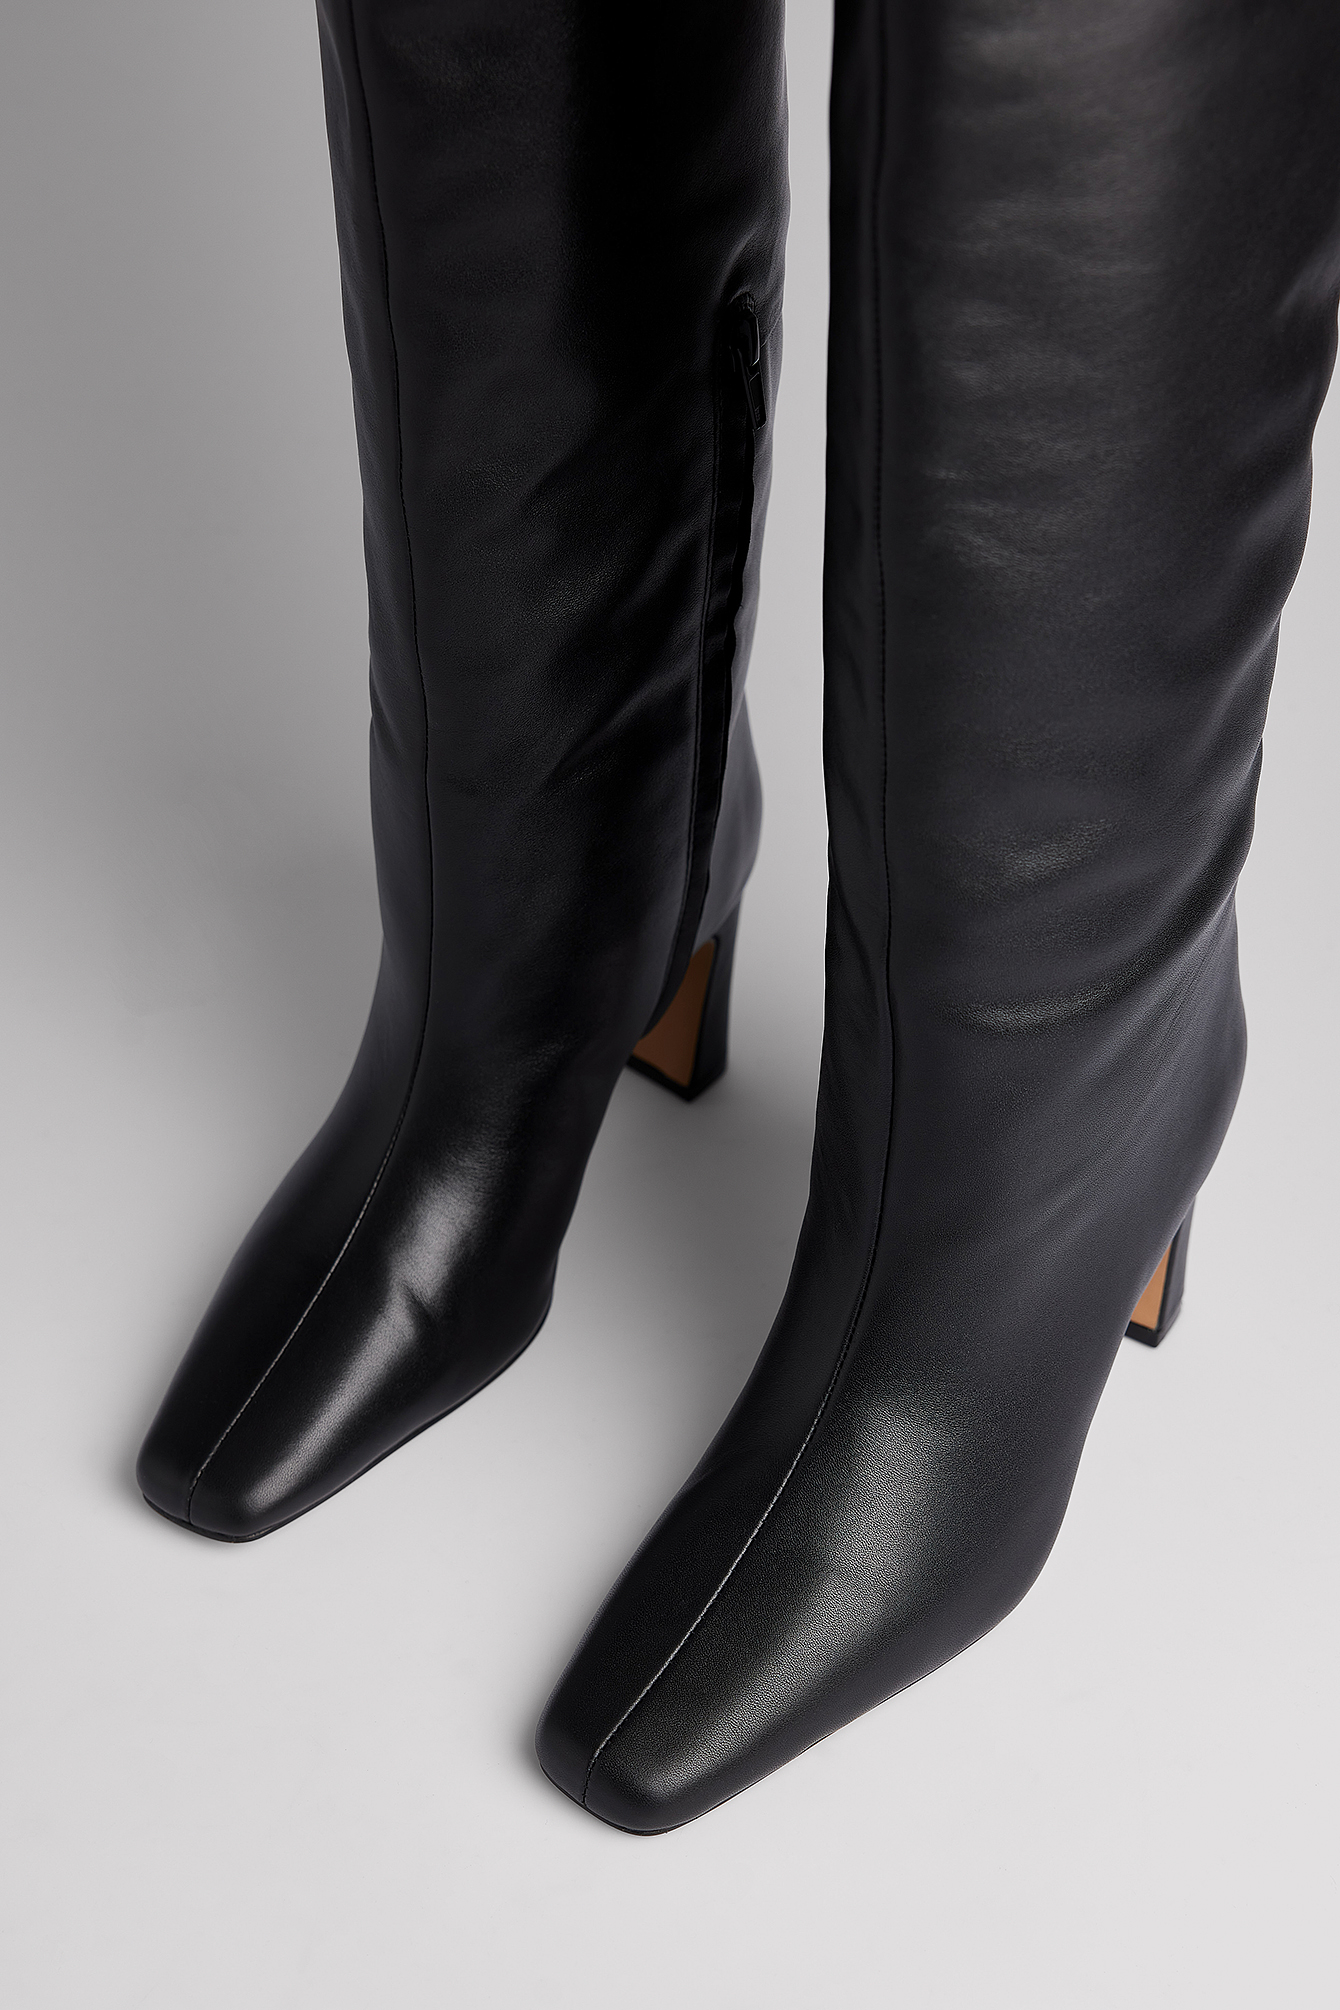 Mujer Zapatos de Botas de Botas de caña alta Botas NA-KD de Tejido sintético de color Negro 